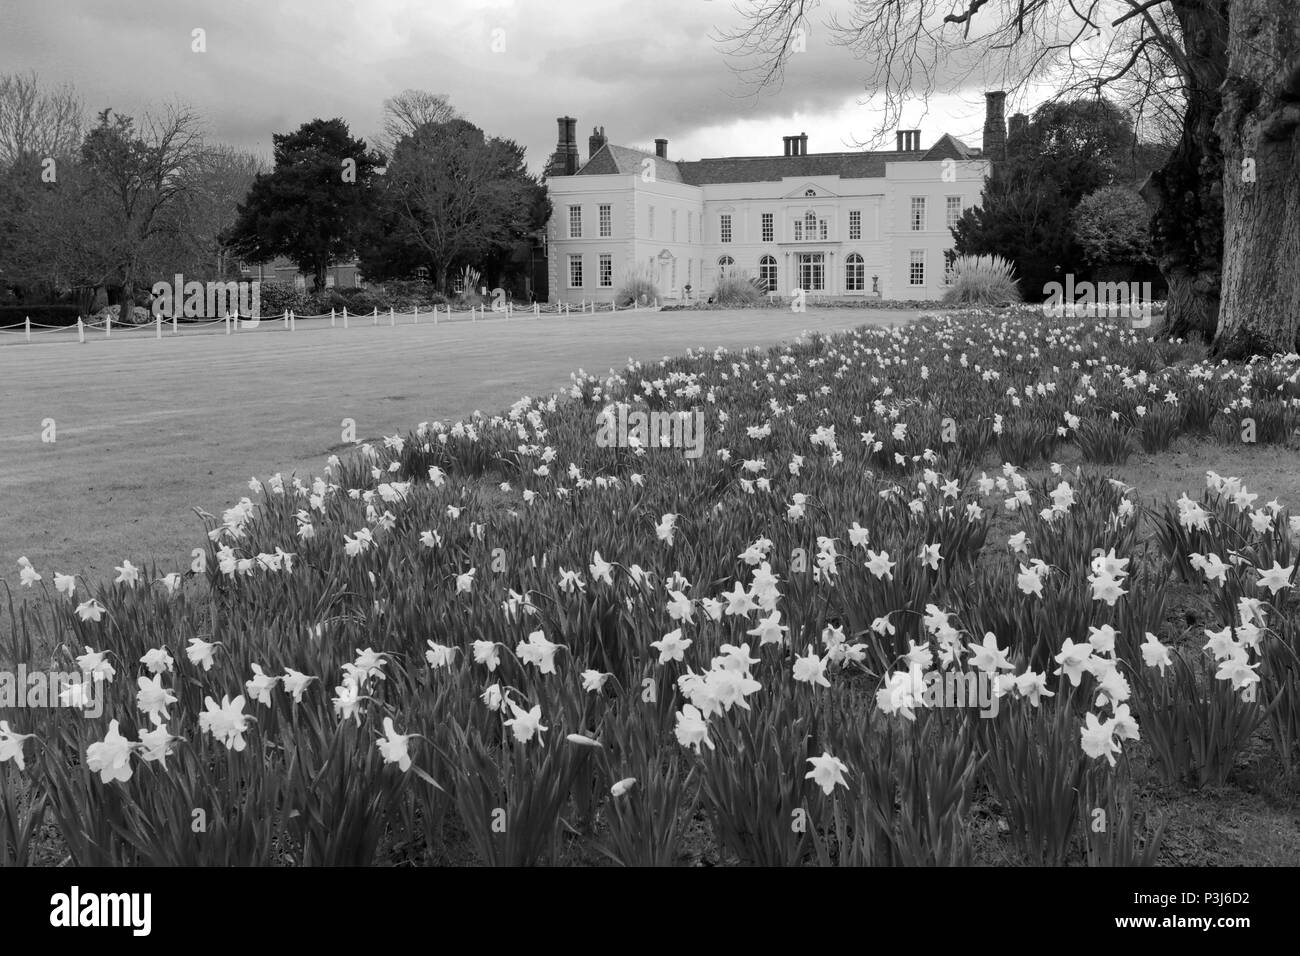 Vue de printemps Hintlesham Hall, Hintlesham village, Suffolk, Angleterre, RU Banque D'Images